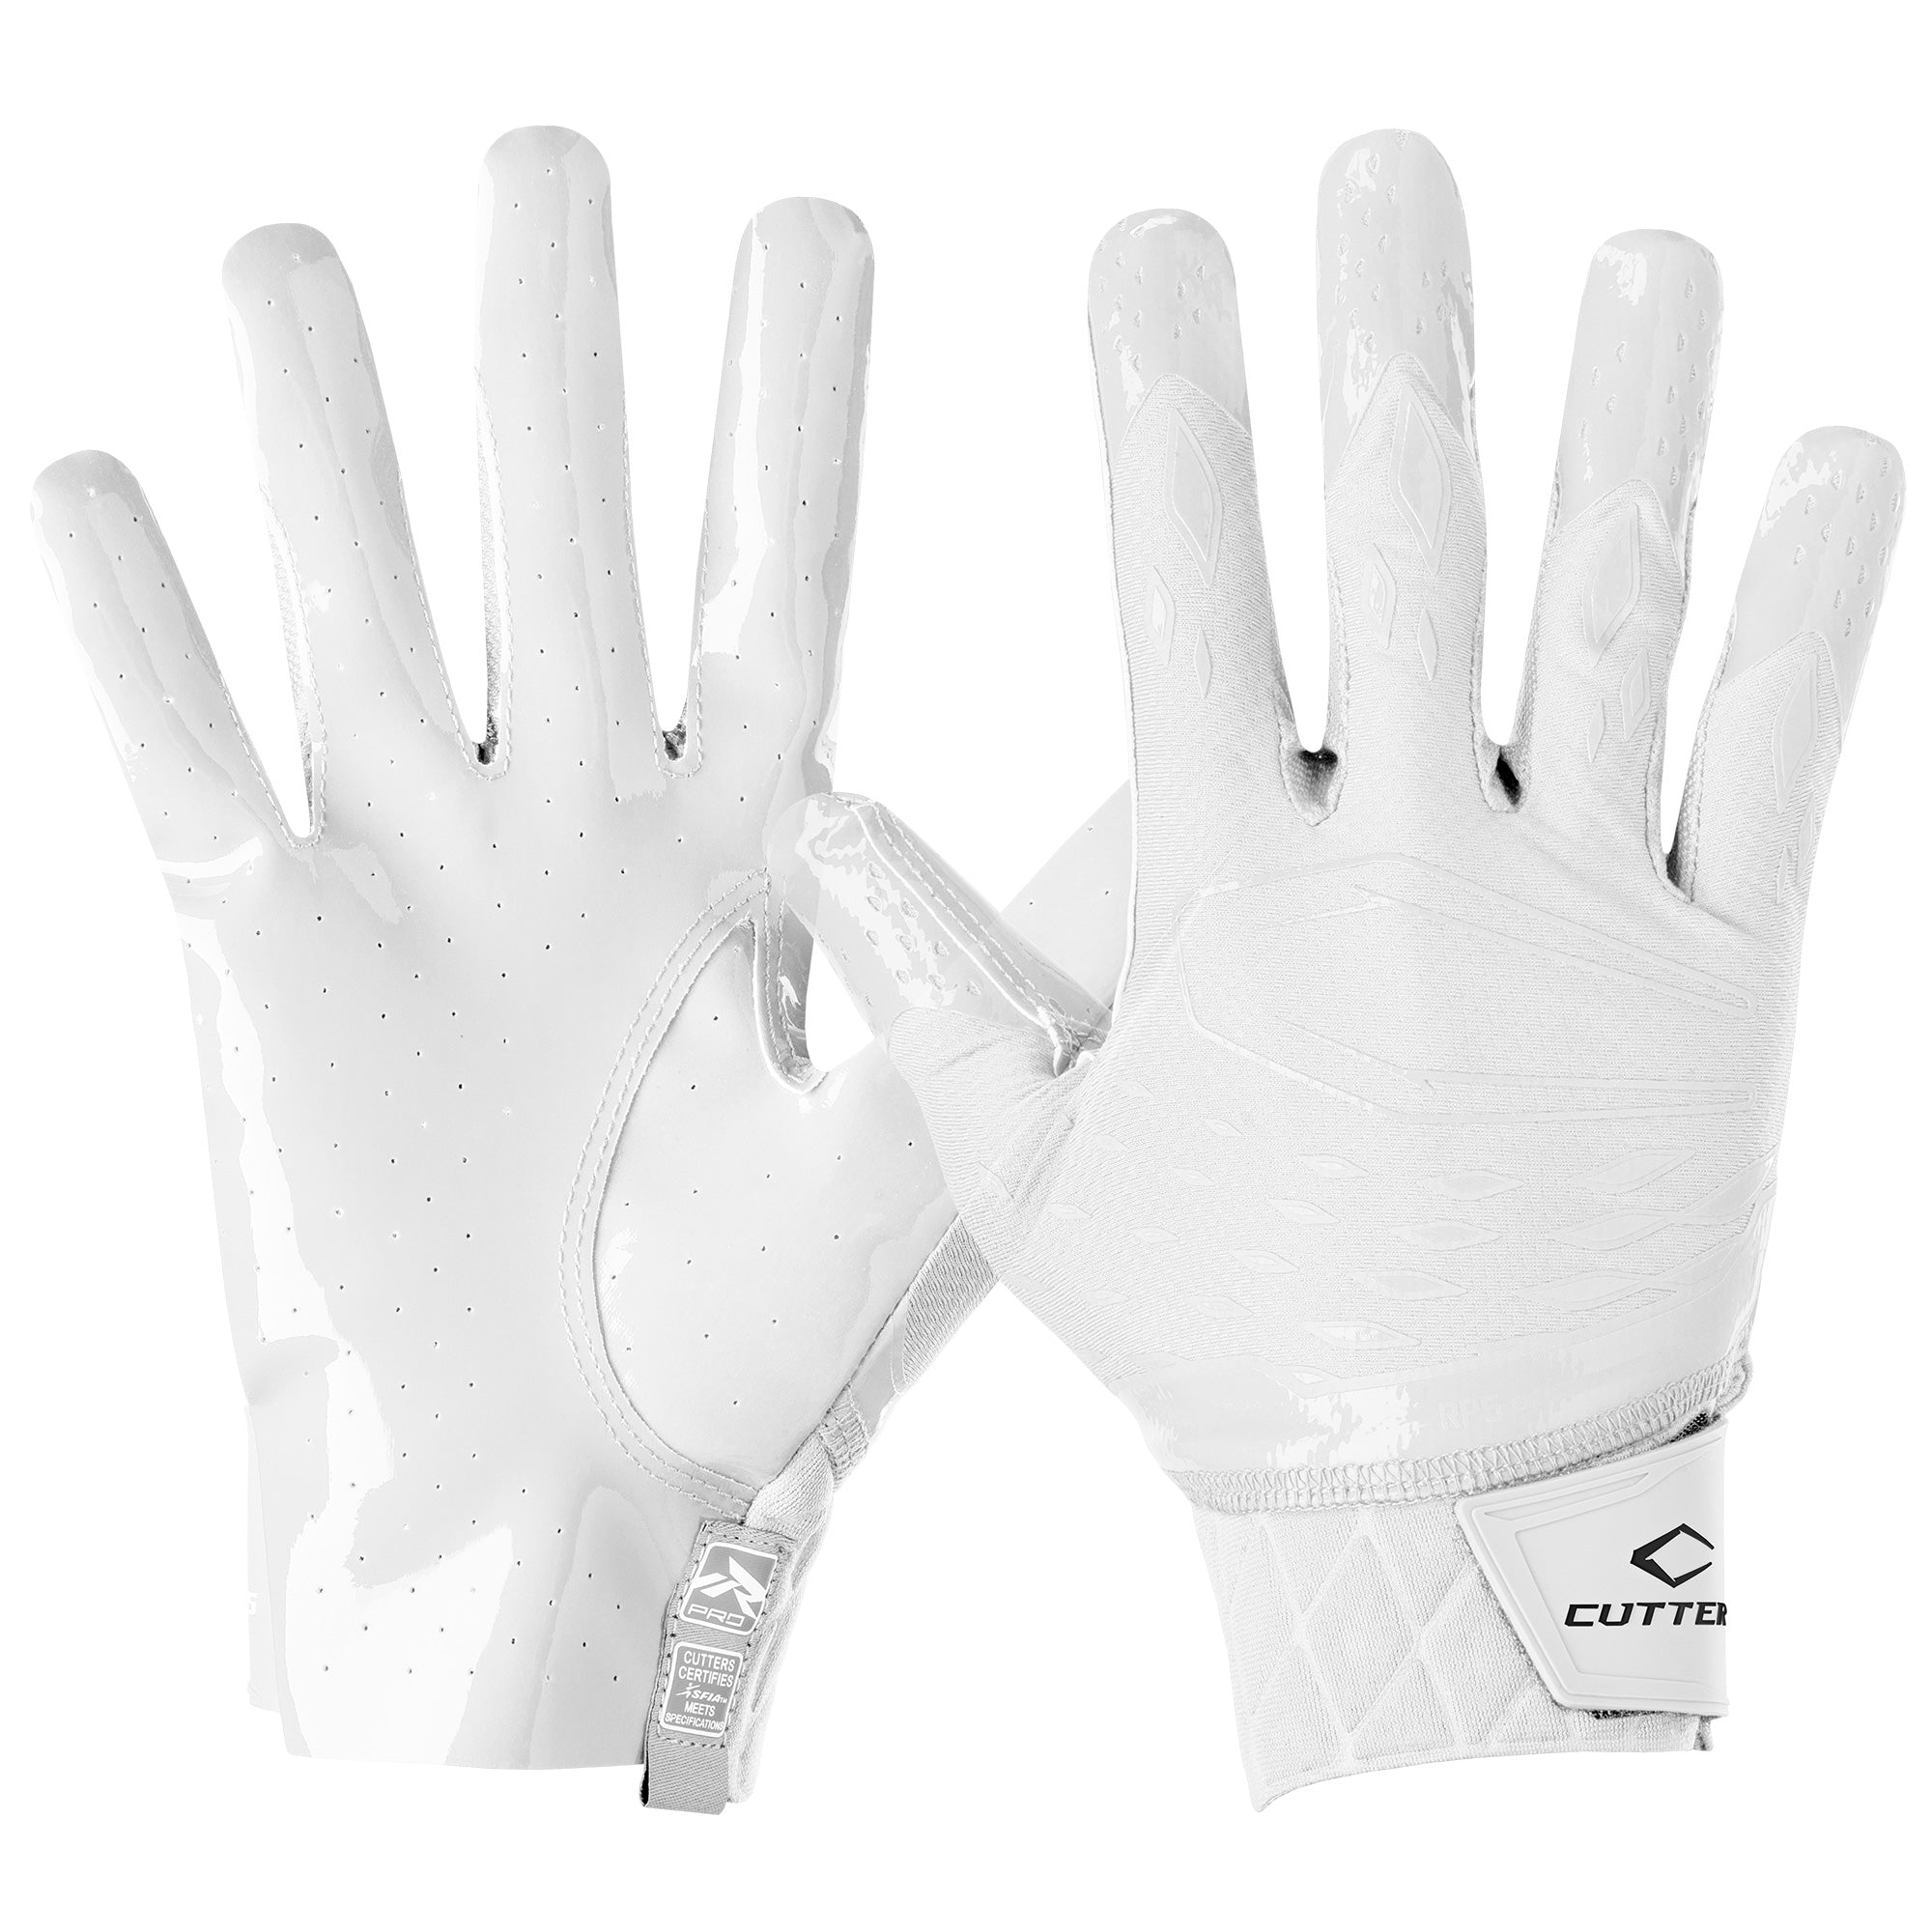 Rev Pro 5.0 Solid Receiver Gloves